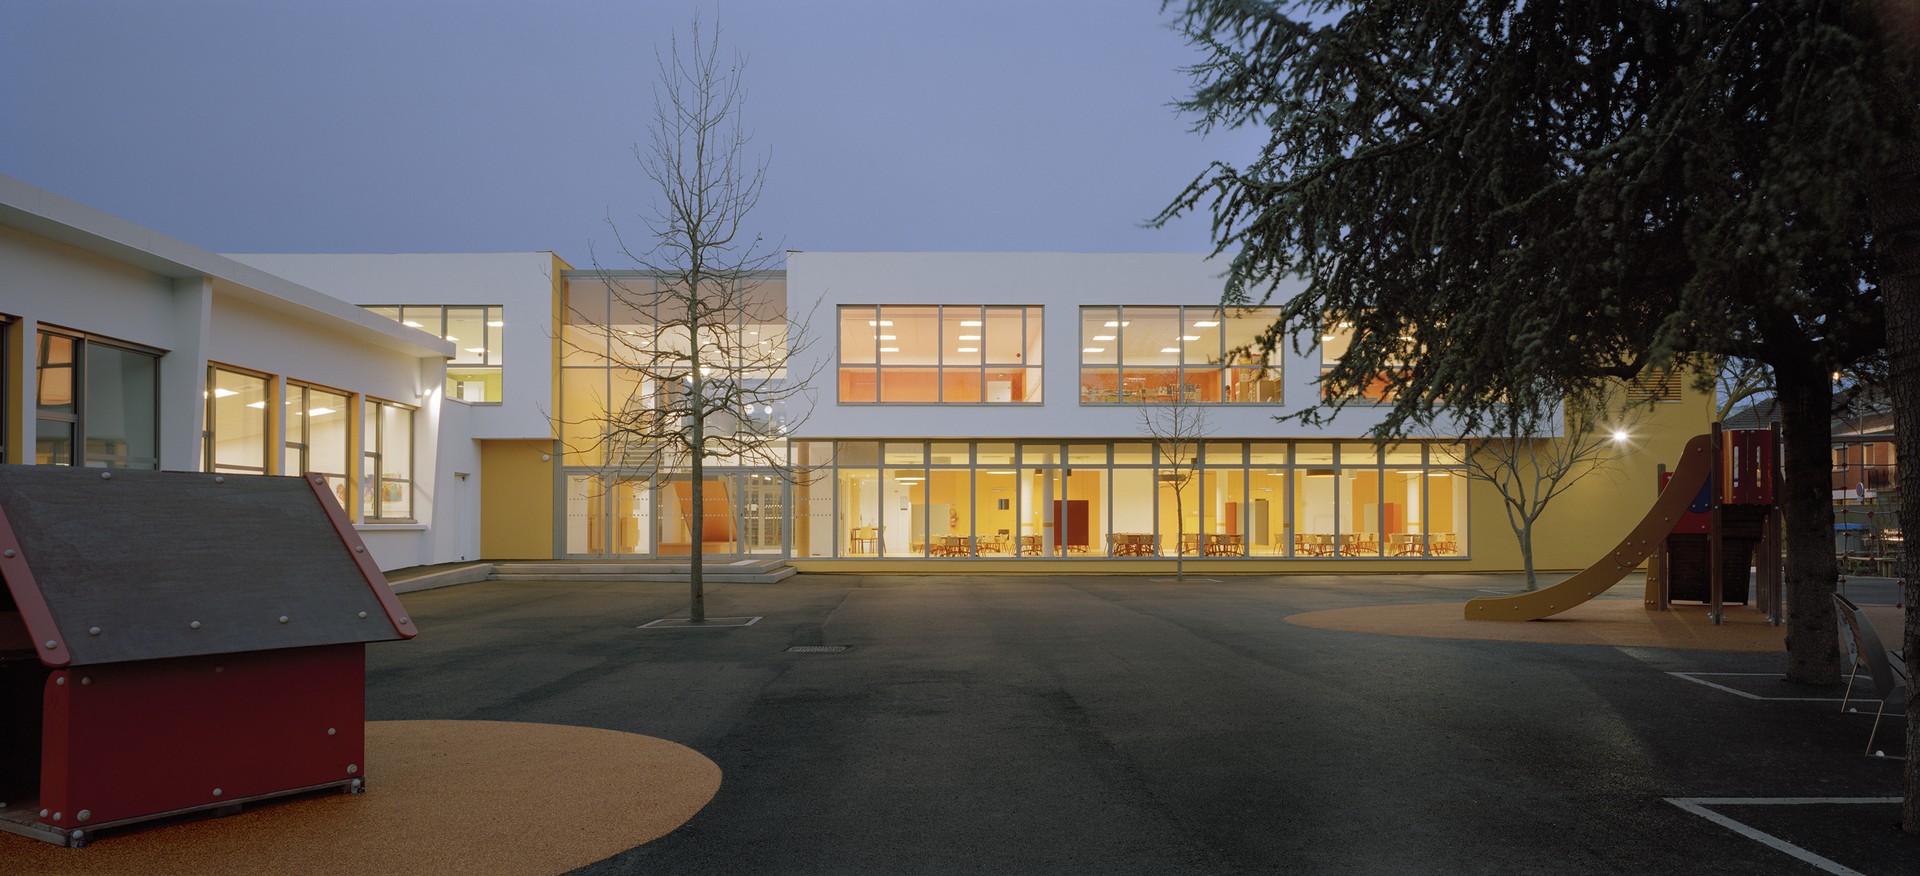 École maternelle Édouard Herriot Image 1